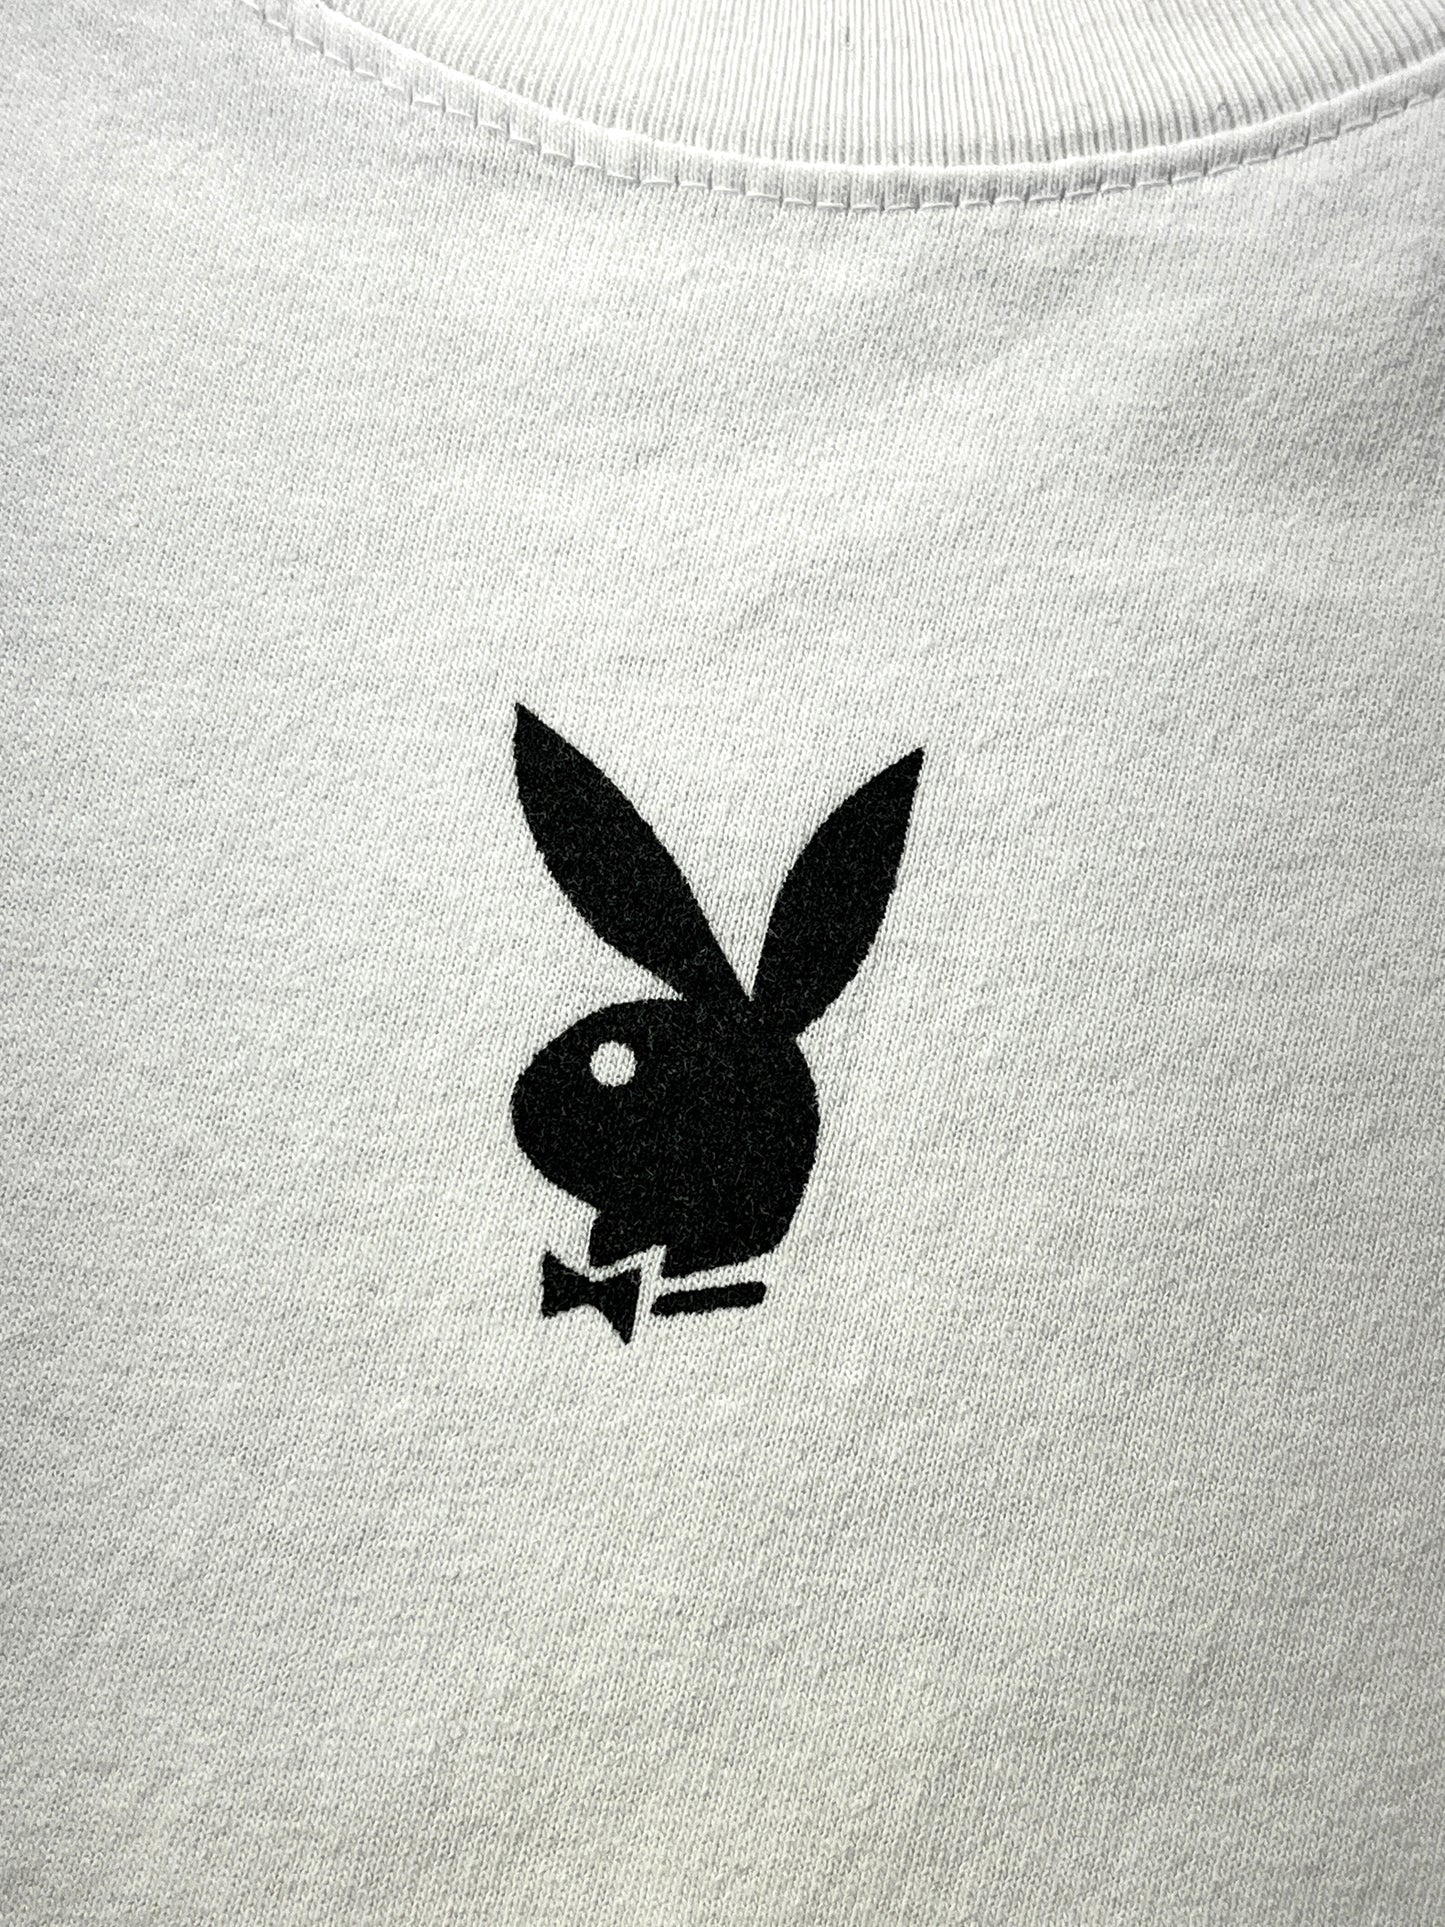 Vintage Playboy T-Shirt Bunny